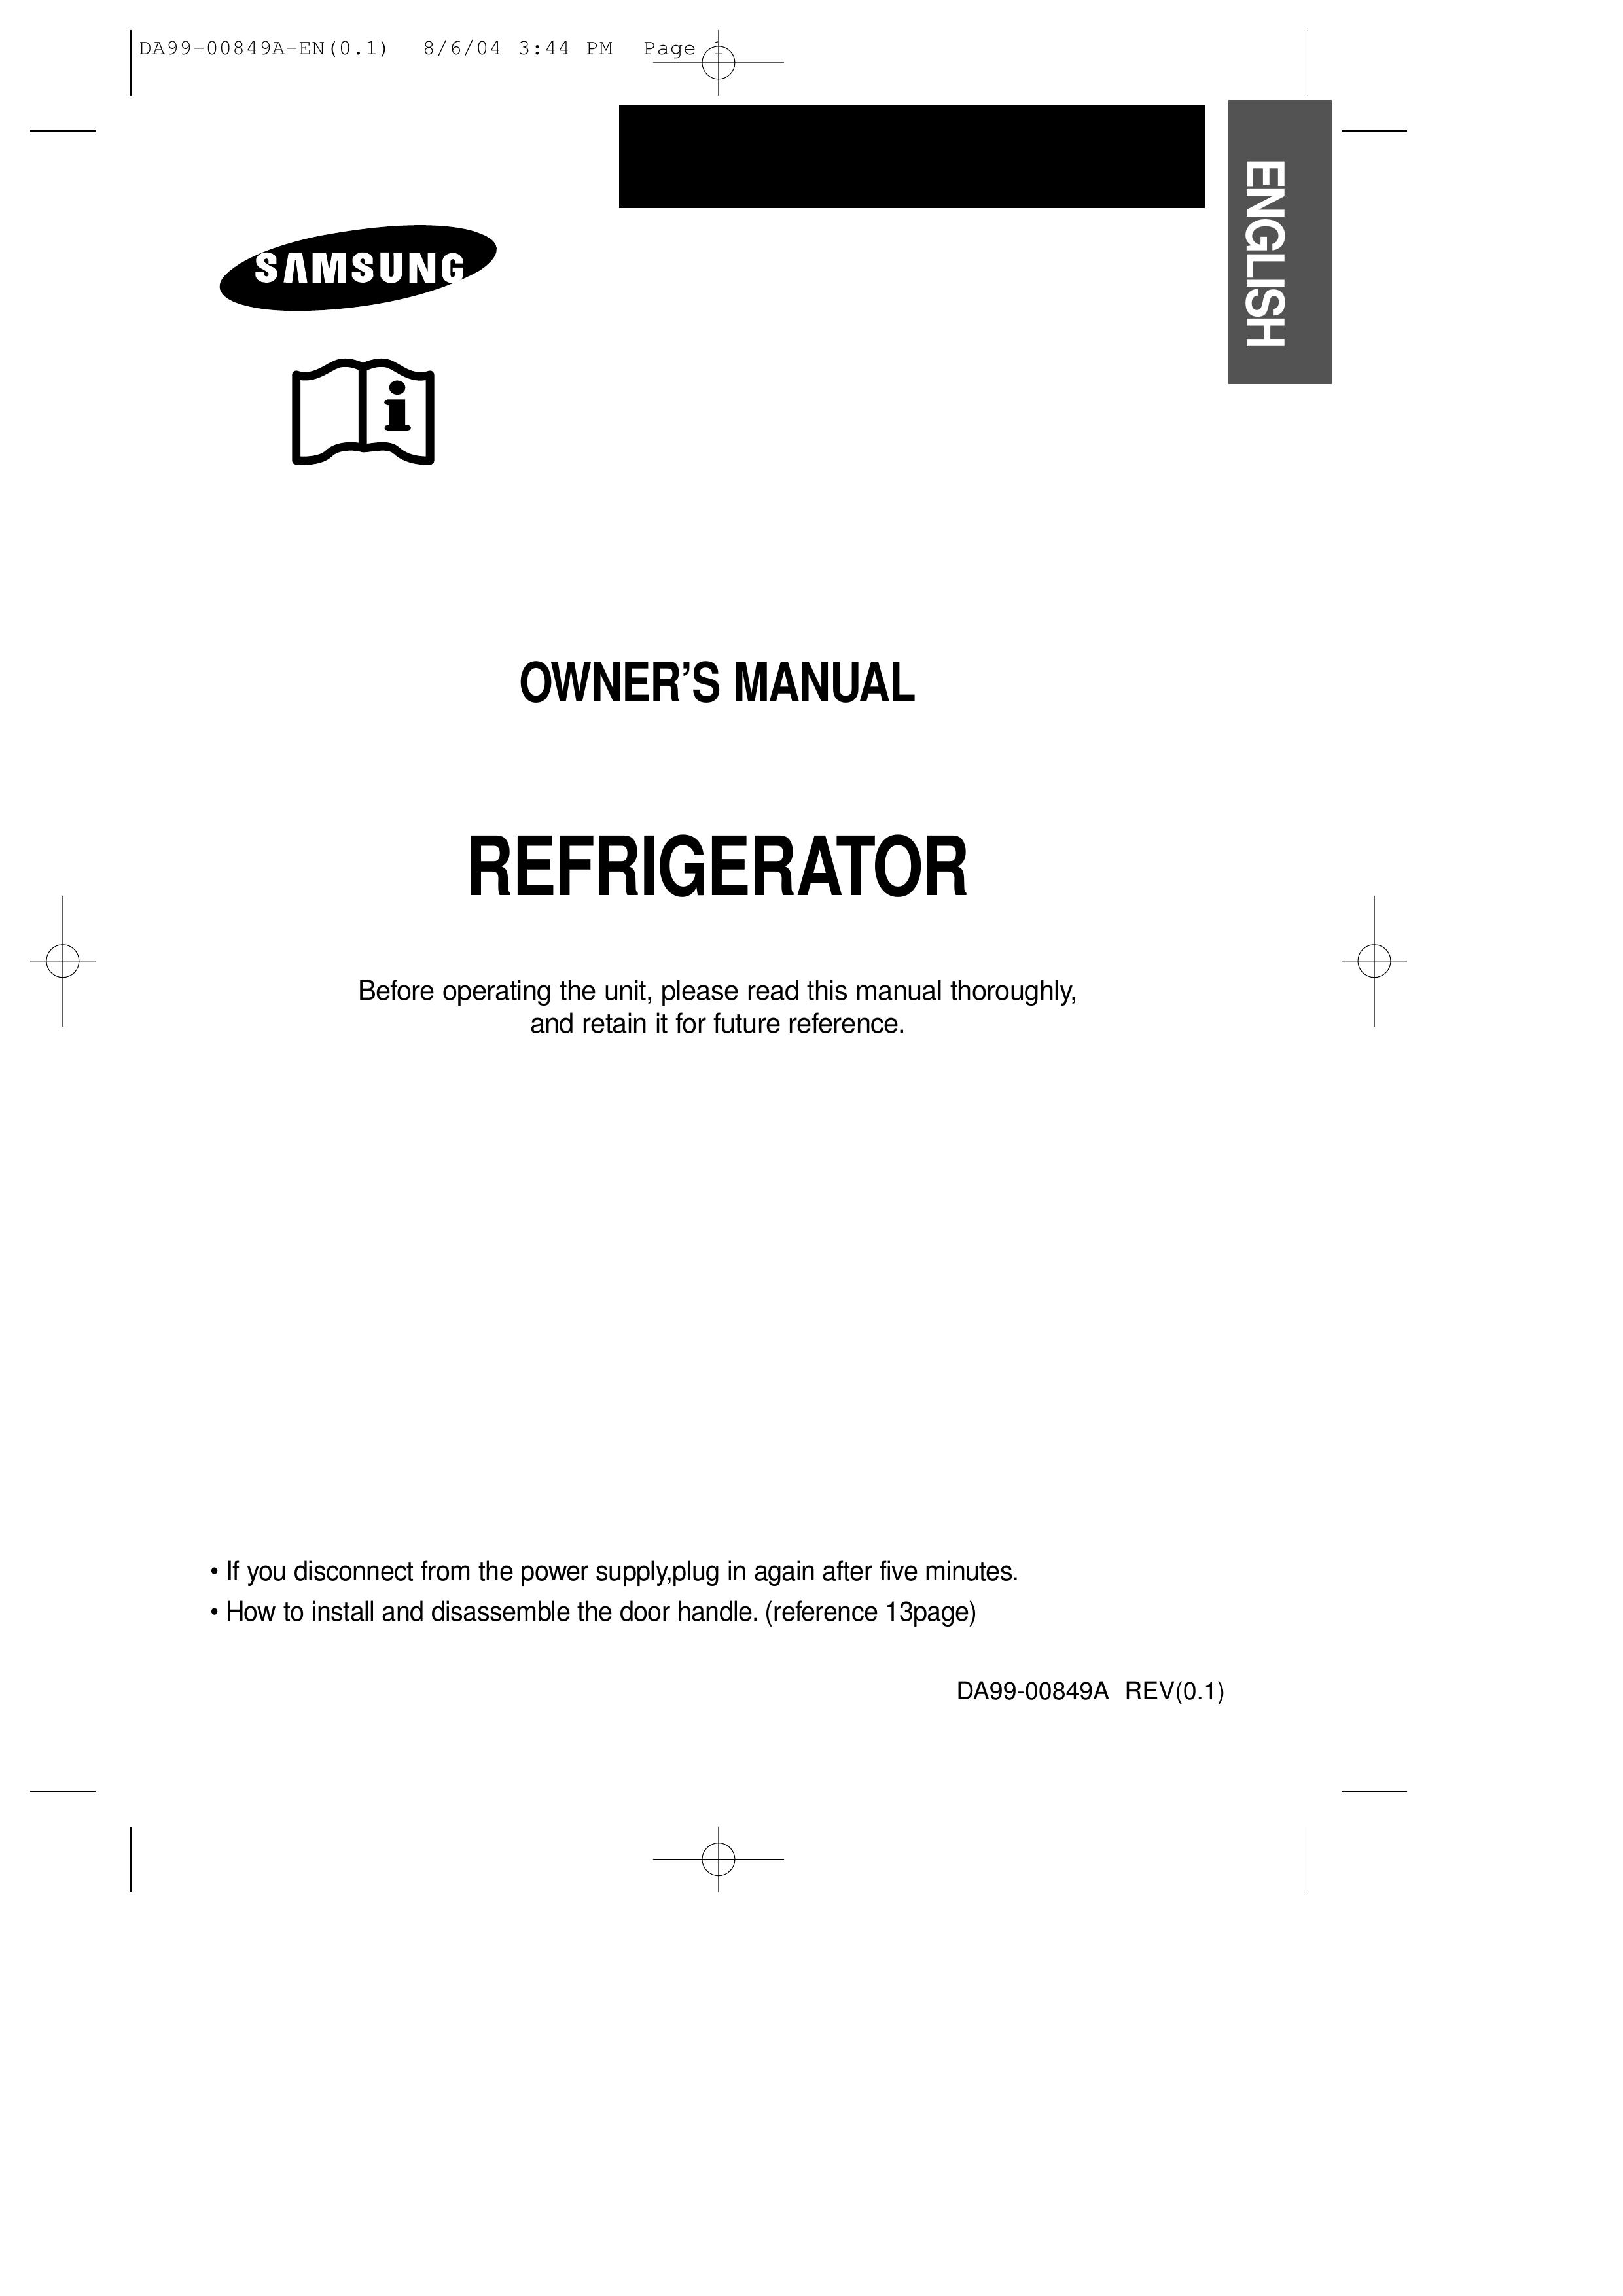 Samsung DA99-00849A Refrigerator User Manual